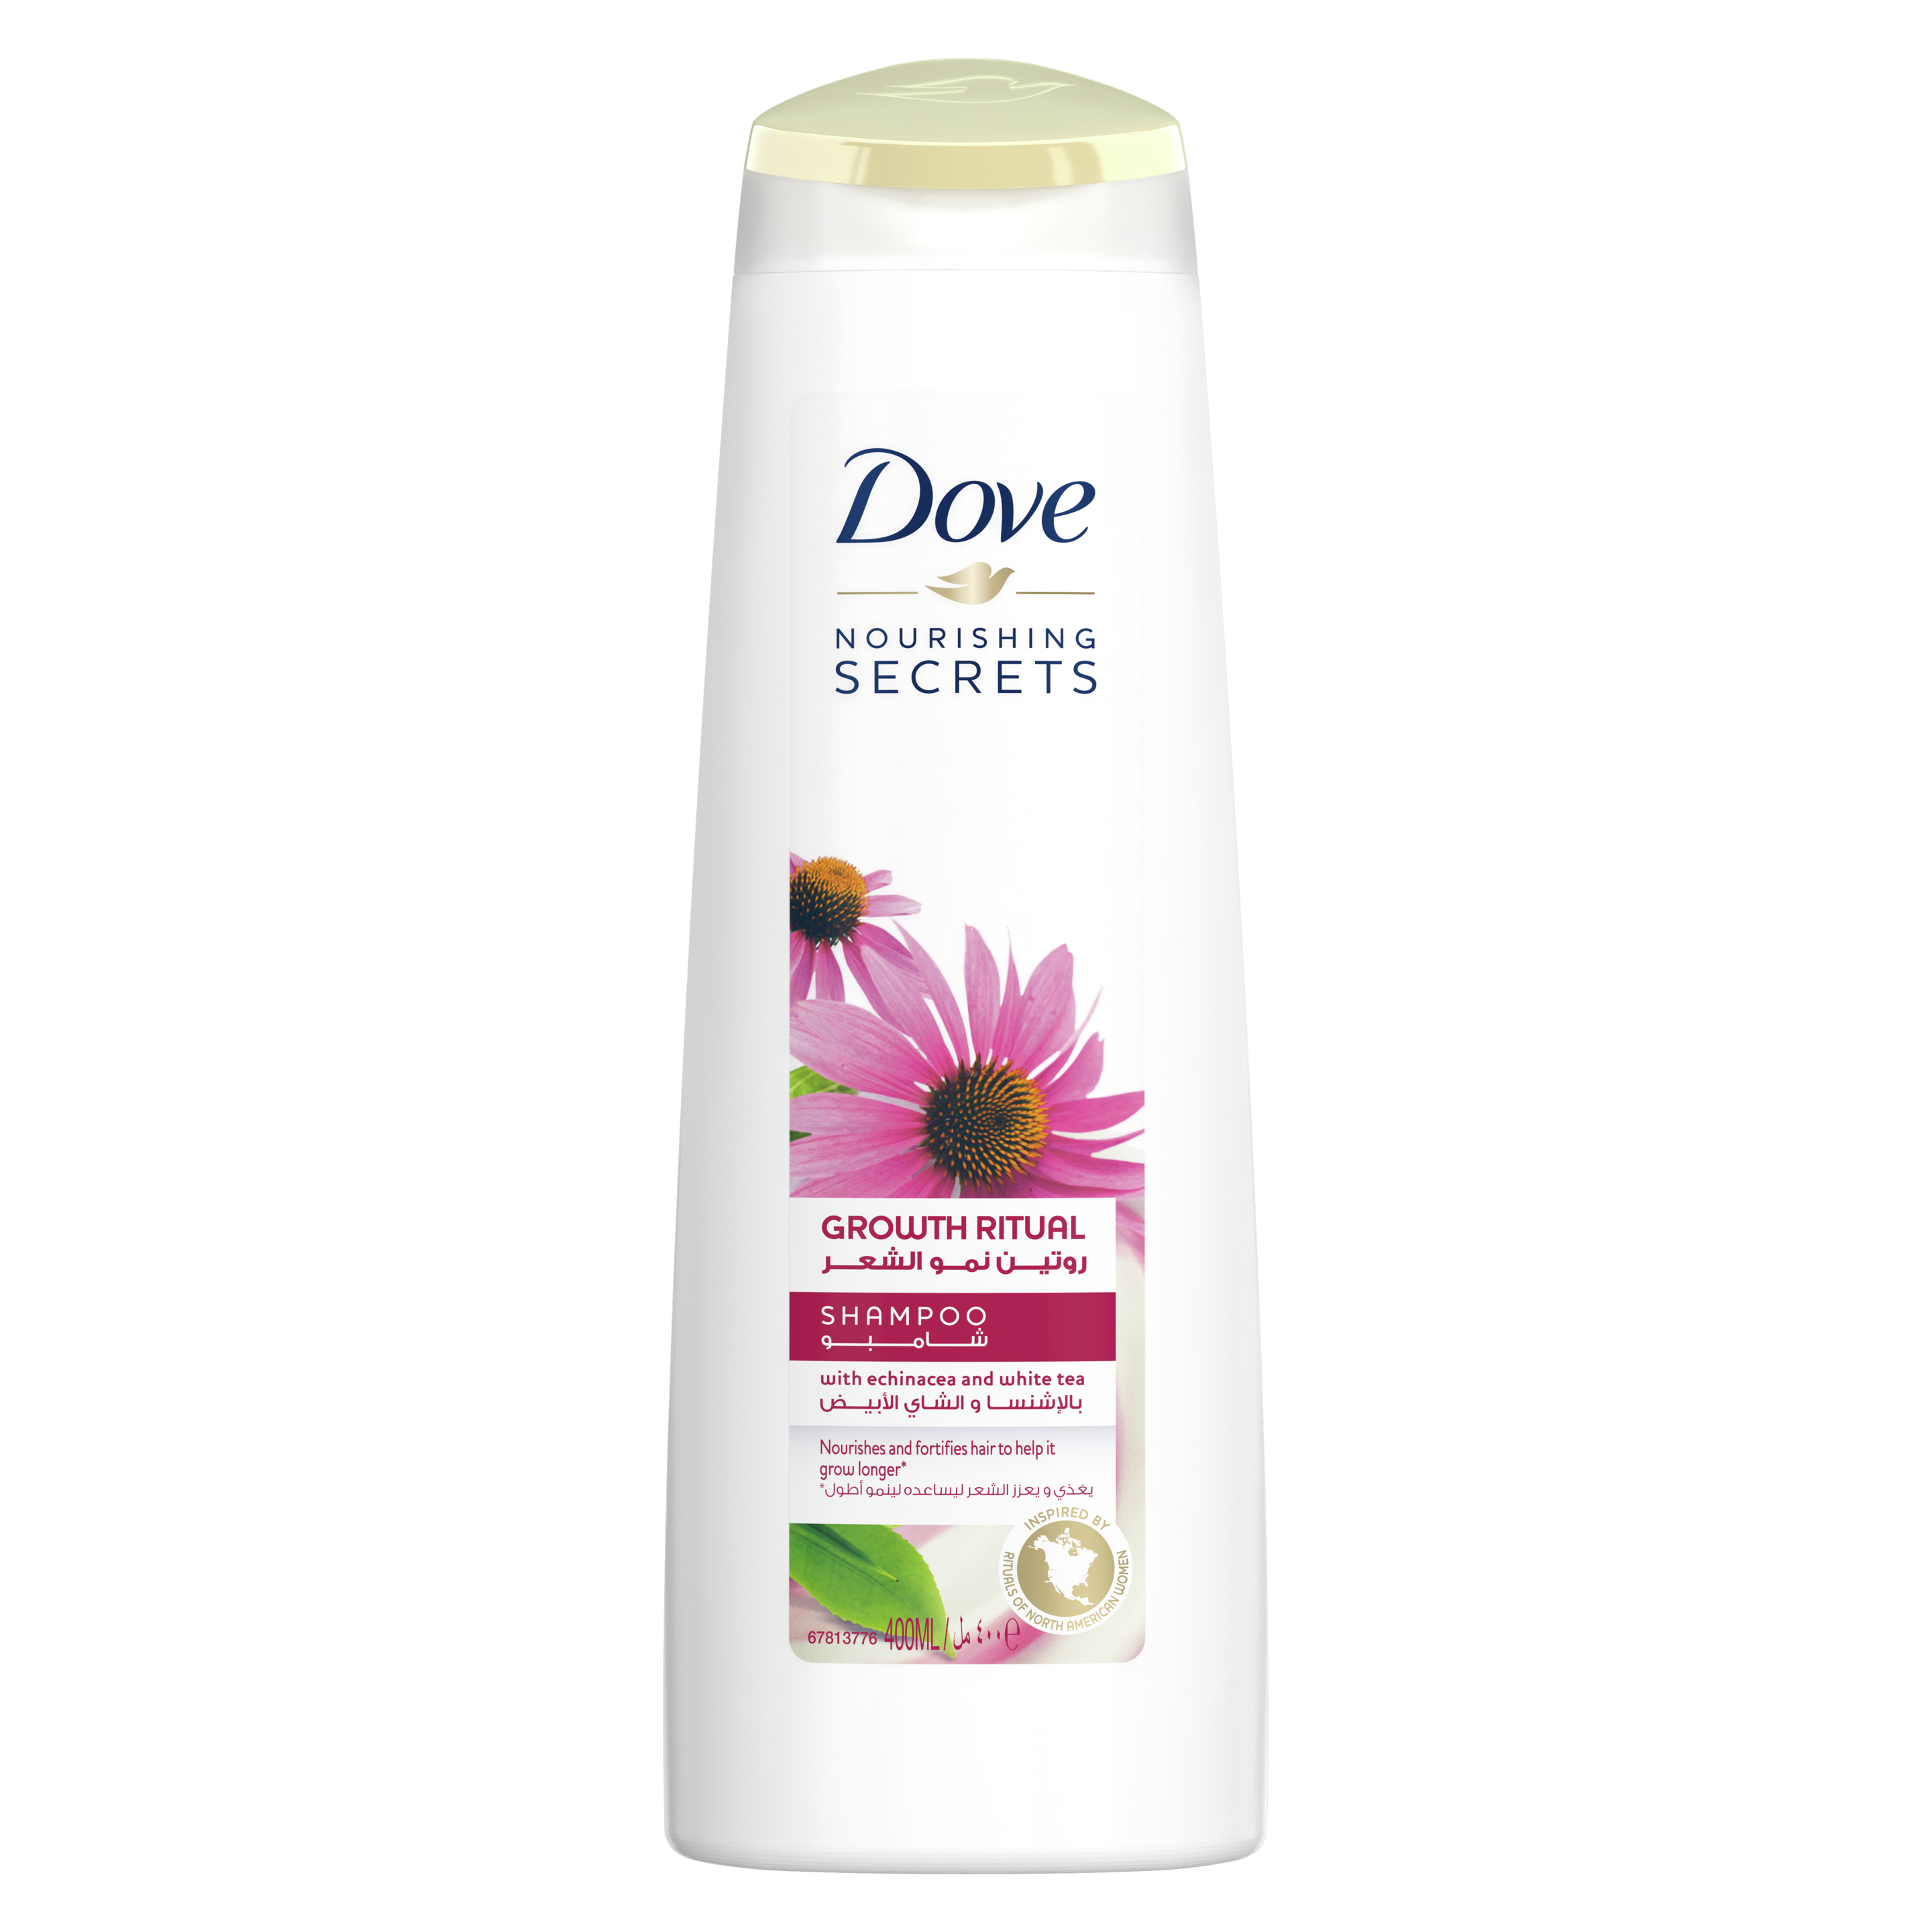 Dove Nourishing Secrets Shampoo Growth Ritual - Echinacea and White Tea 400ml